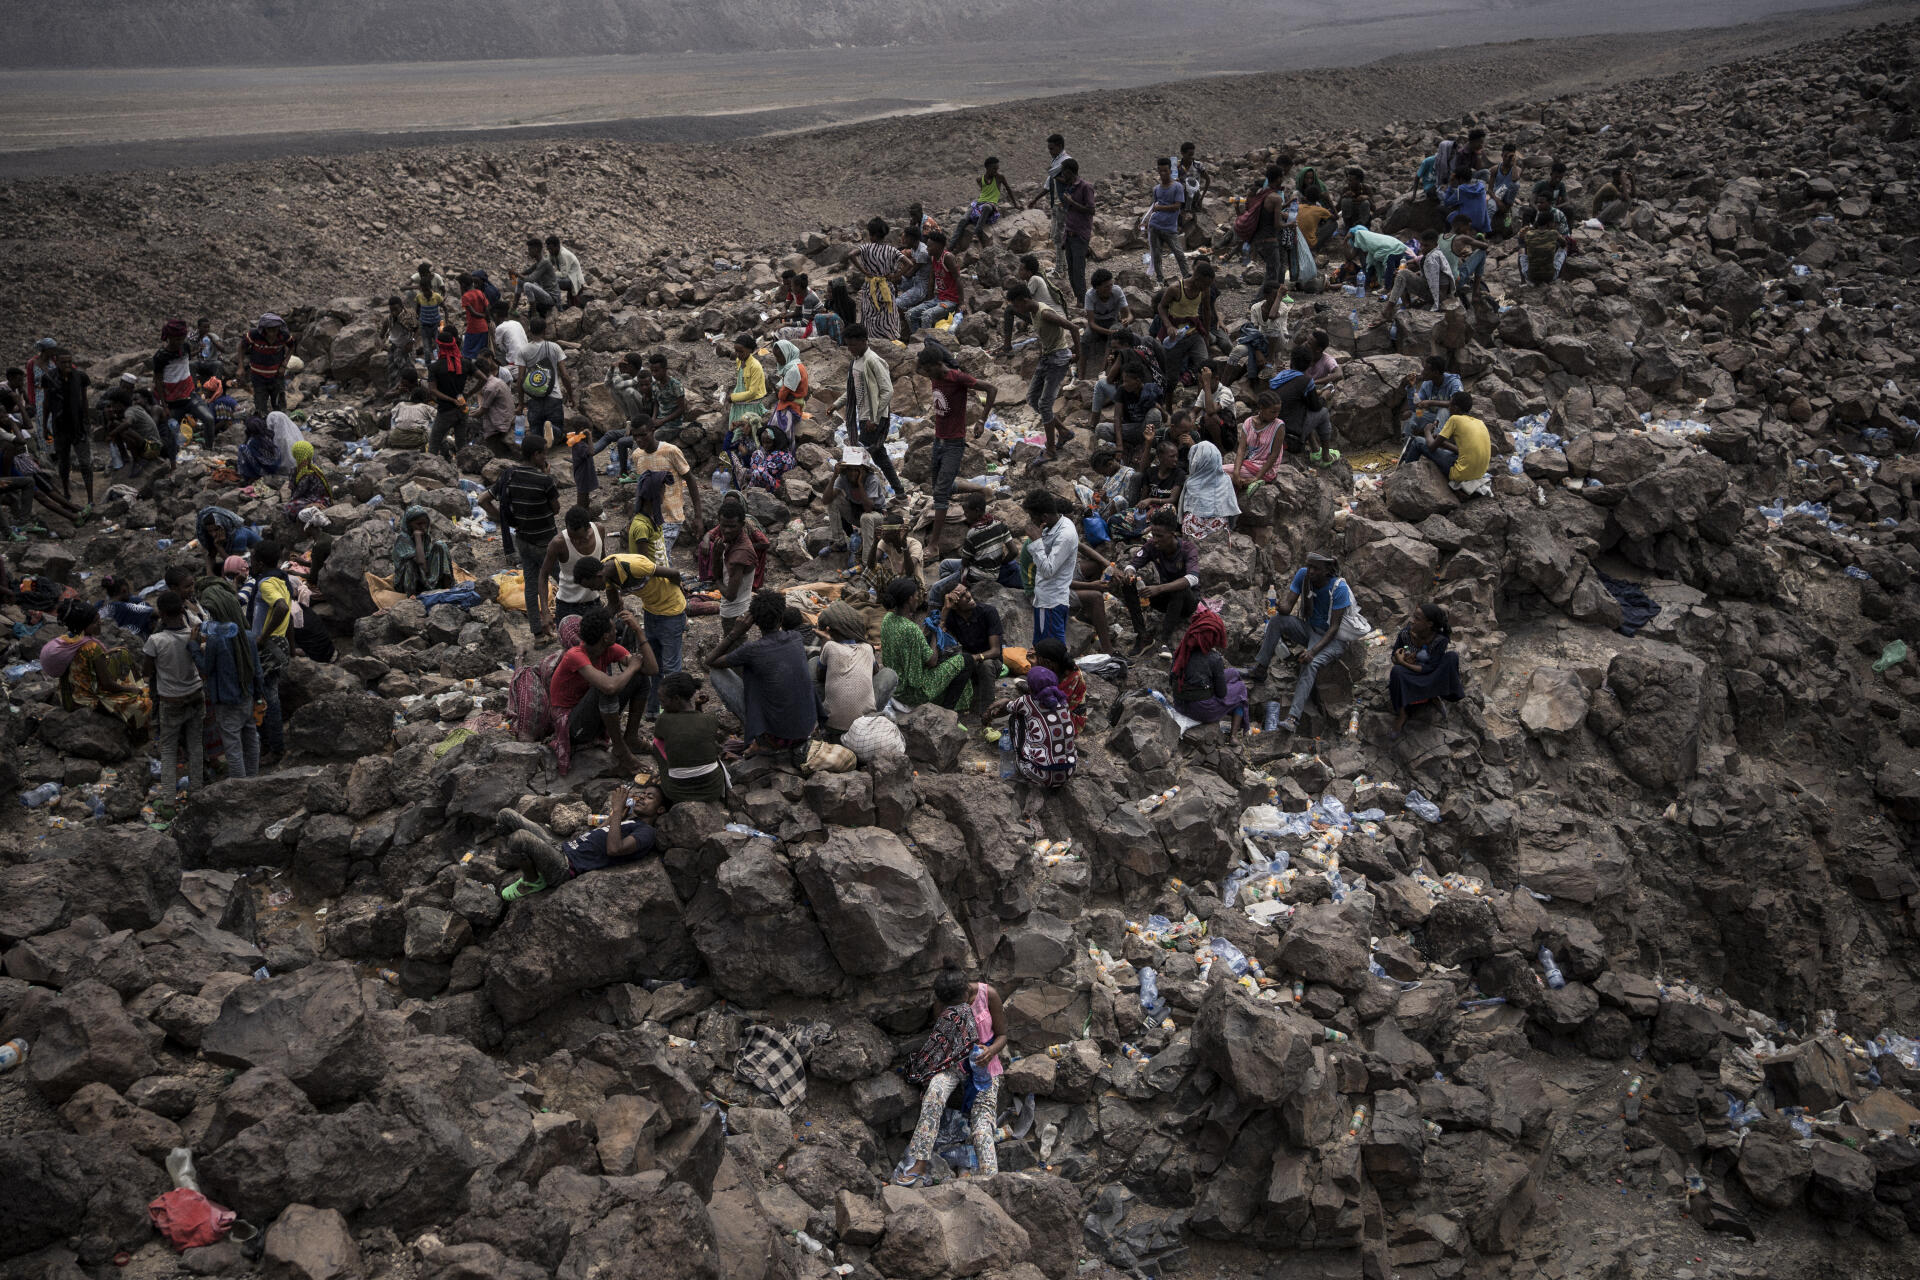 Les migrants Oromo traversent la région de Galafi, à la frontière entre l’Ethiopie et Djibouti. Ce désert minéral est l’une des régions les plus chaudes du monde.